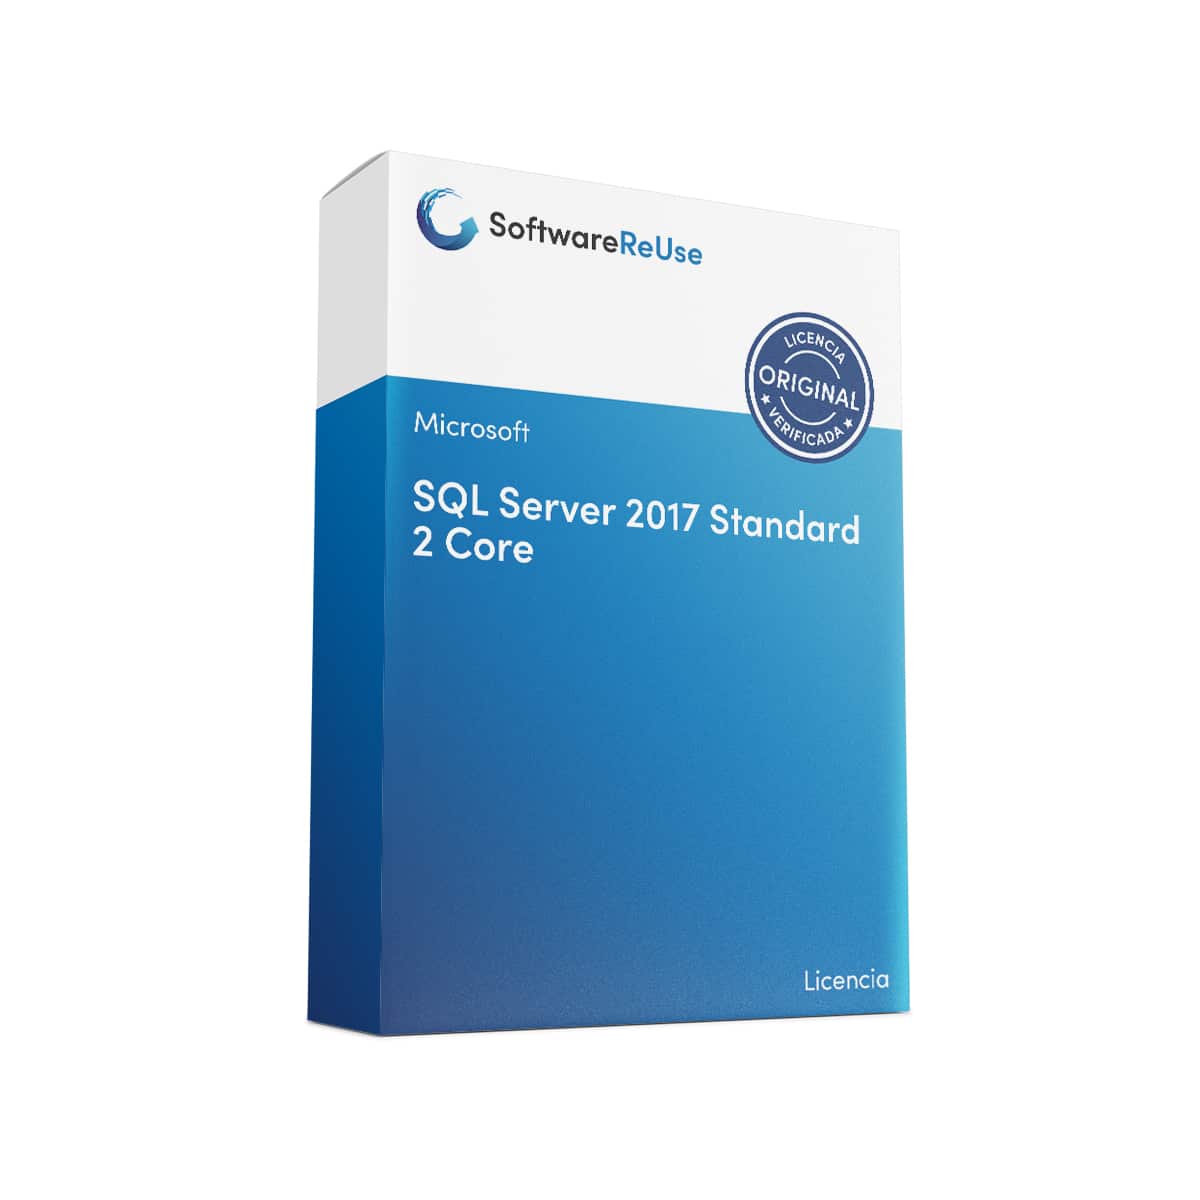 SQL Server 2017 Standard 2 Core ES